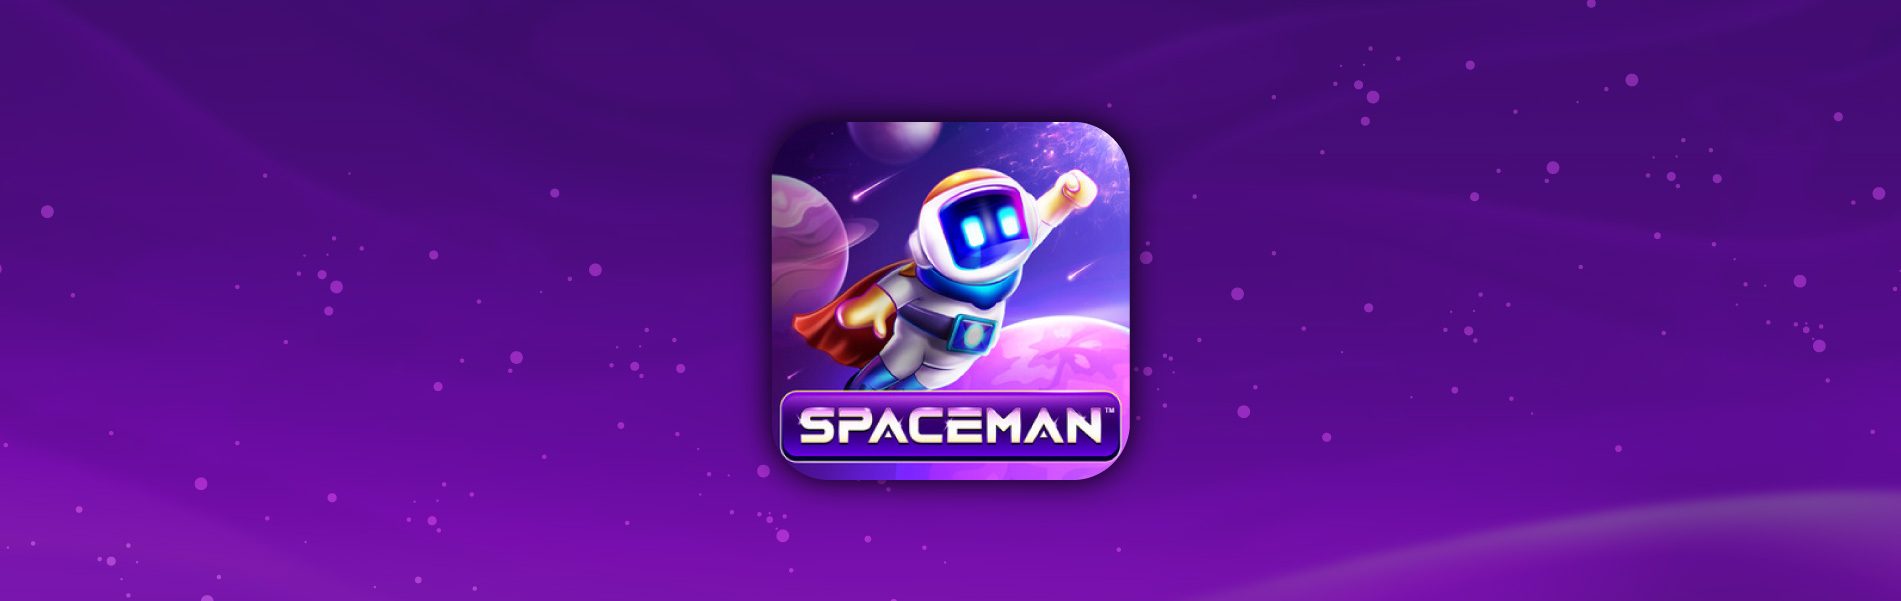 Spaceman: A Inovação dos Jogos de Crash por Pragmatic Play no Brasil – Acre  Notícias